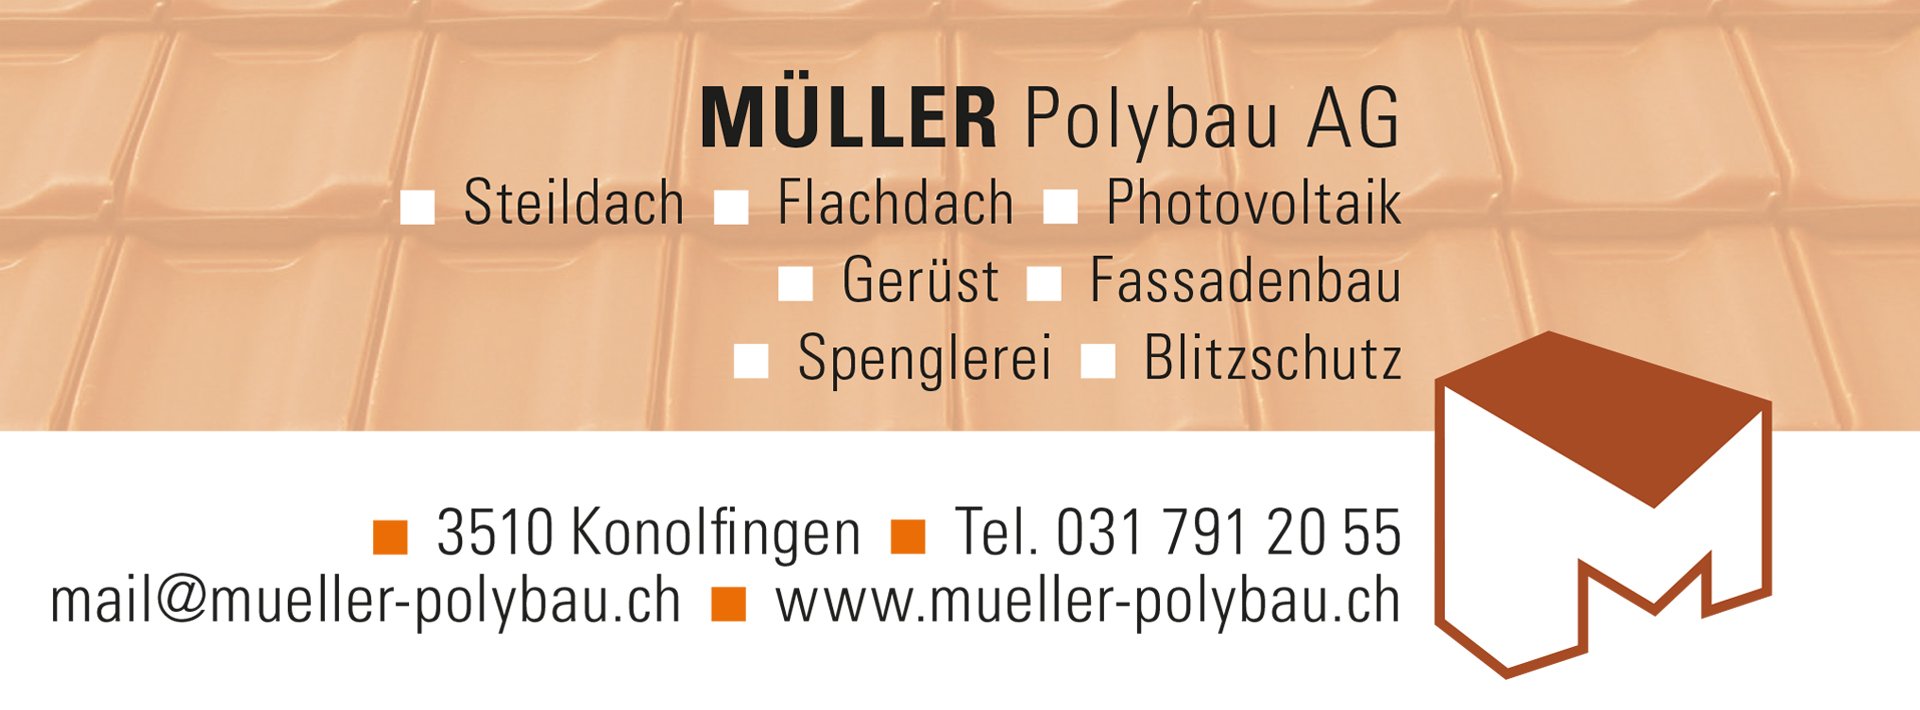 Bronzesponsor - Müller Polybau AG